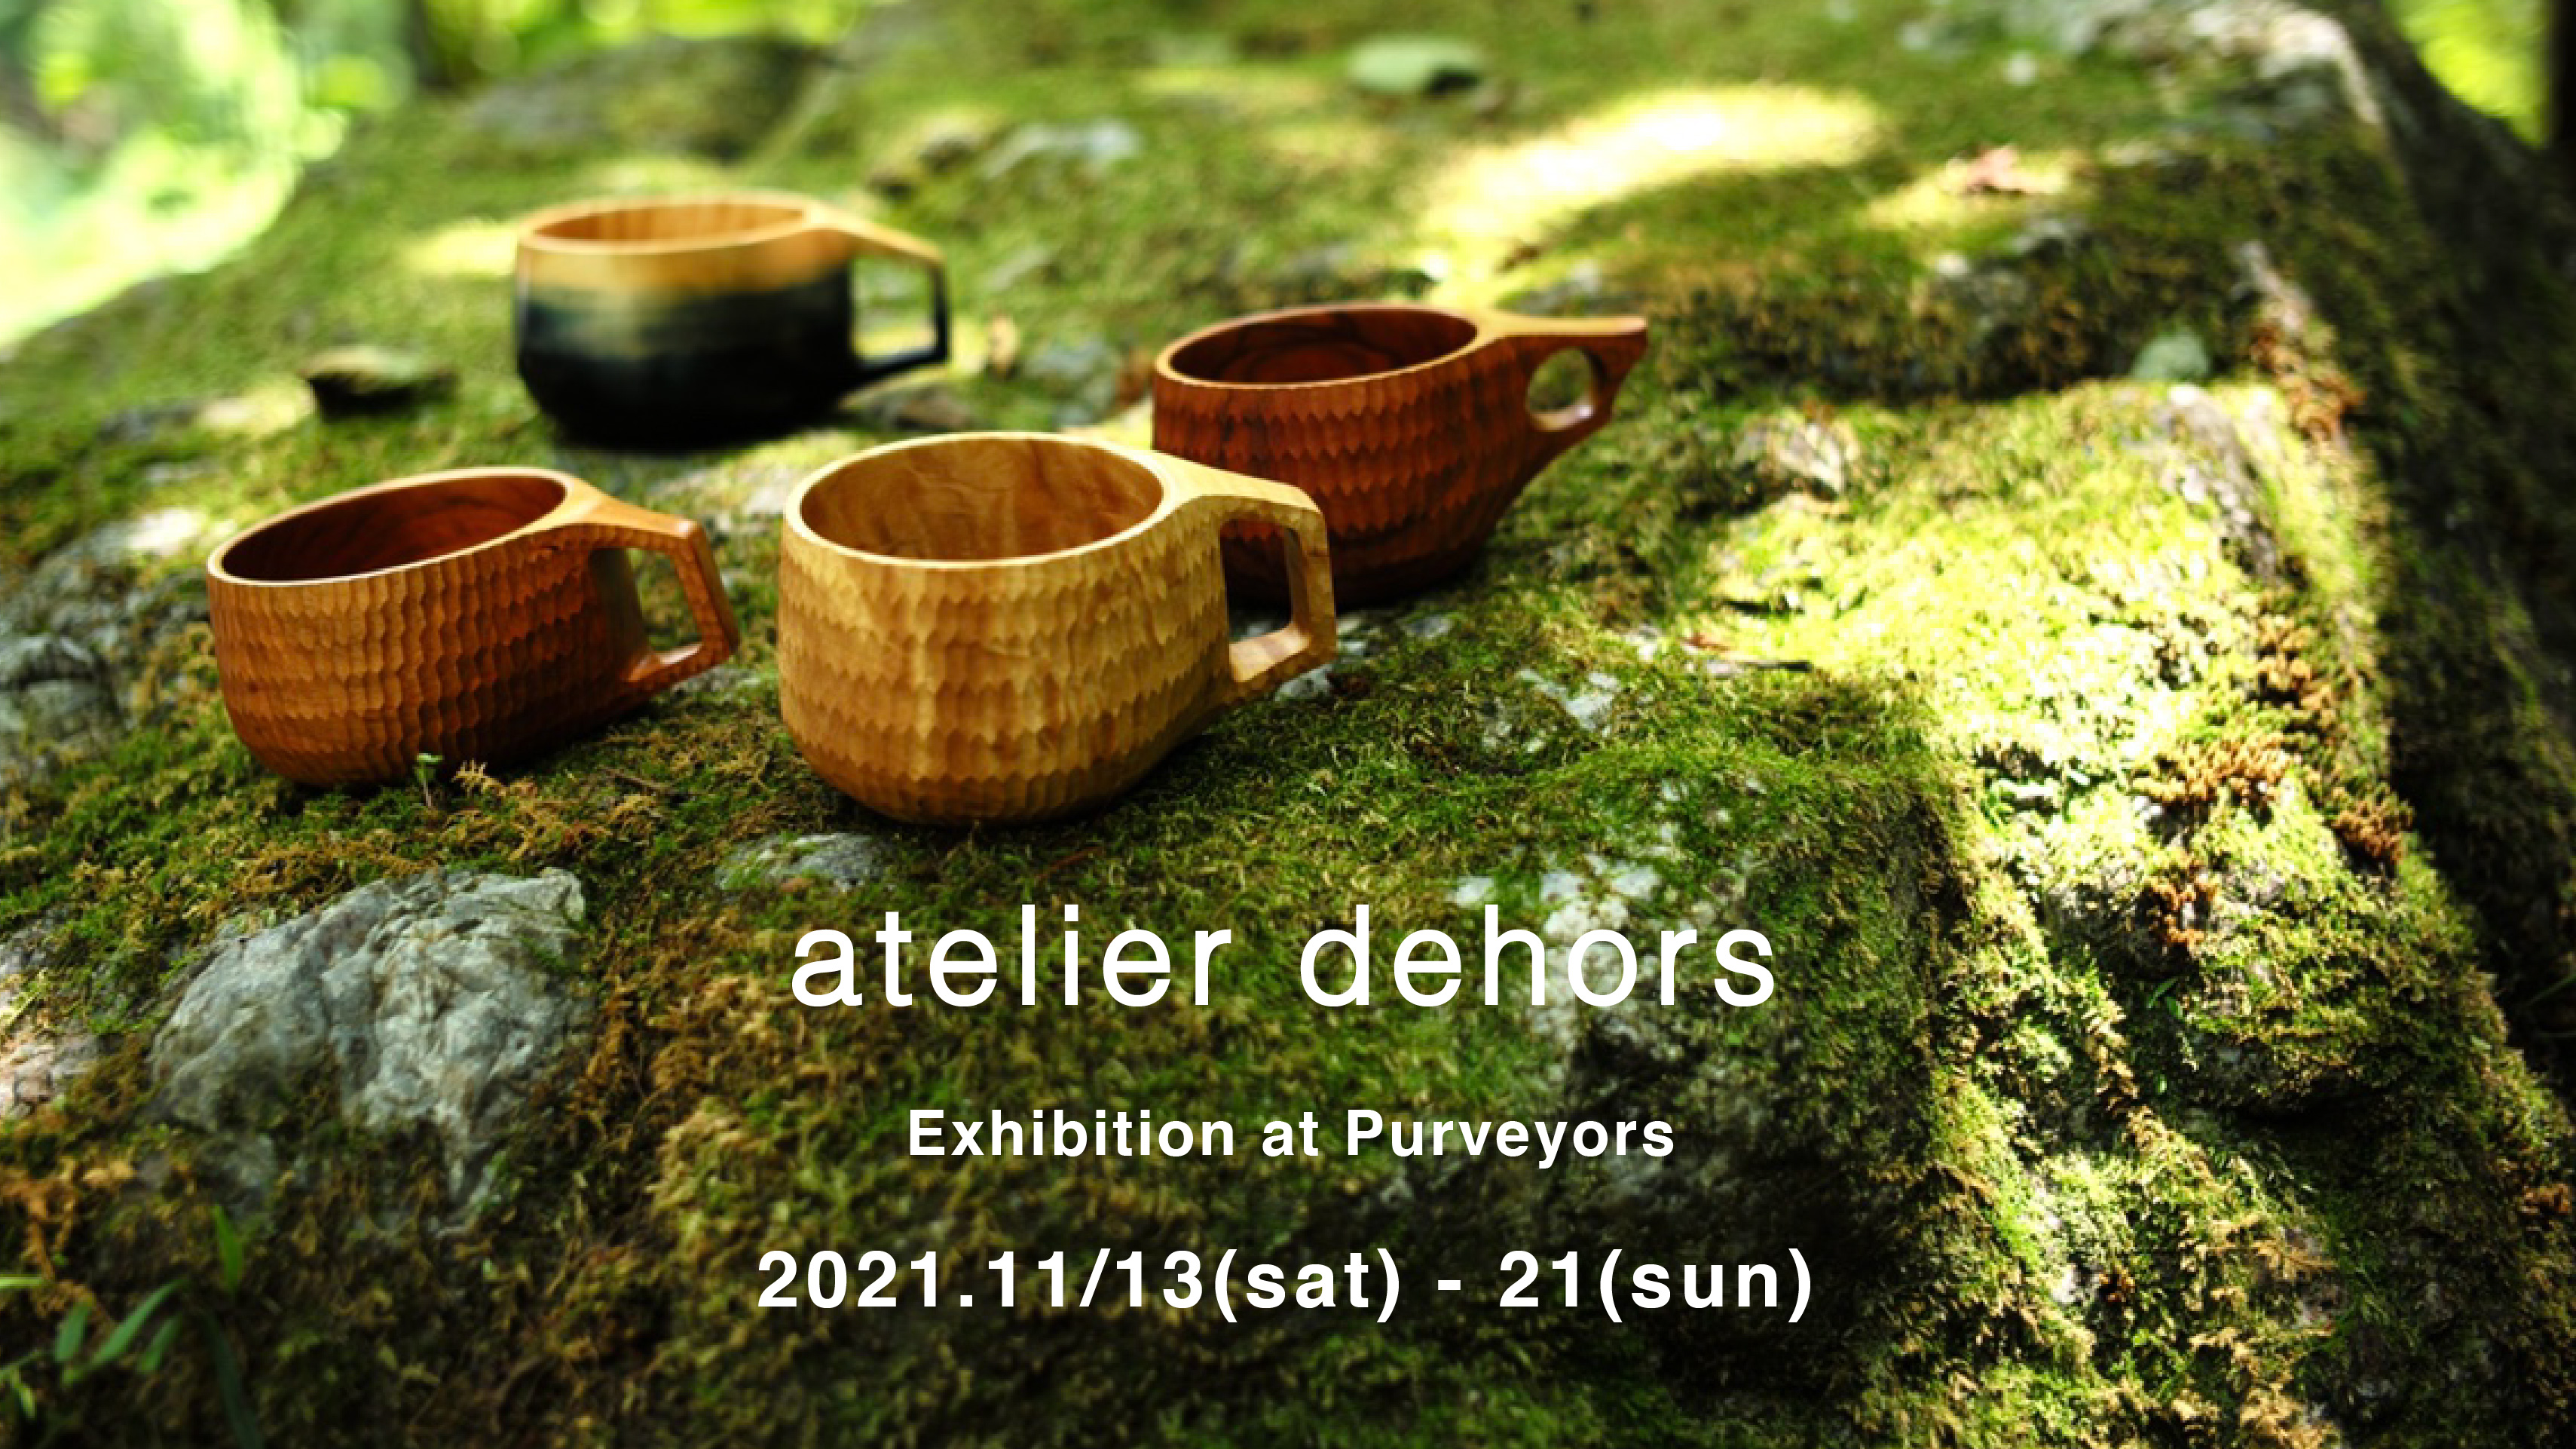 2021/11/13 - 21 atelier dehors exhibition